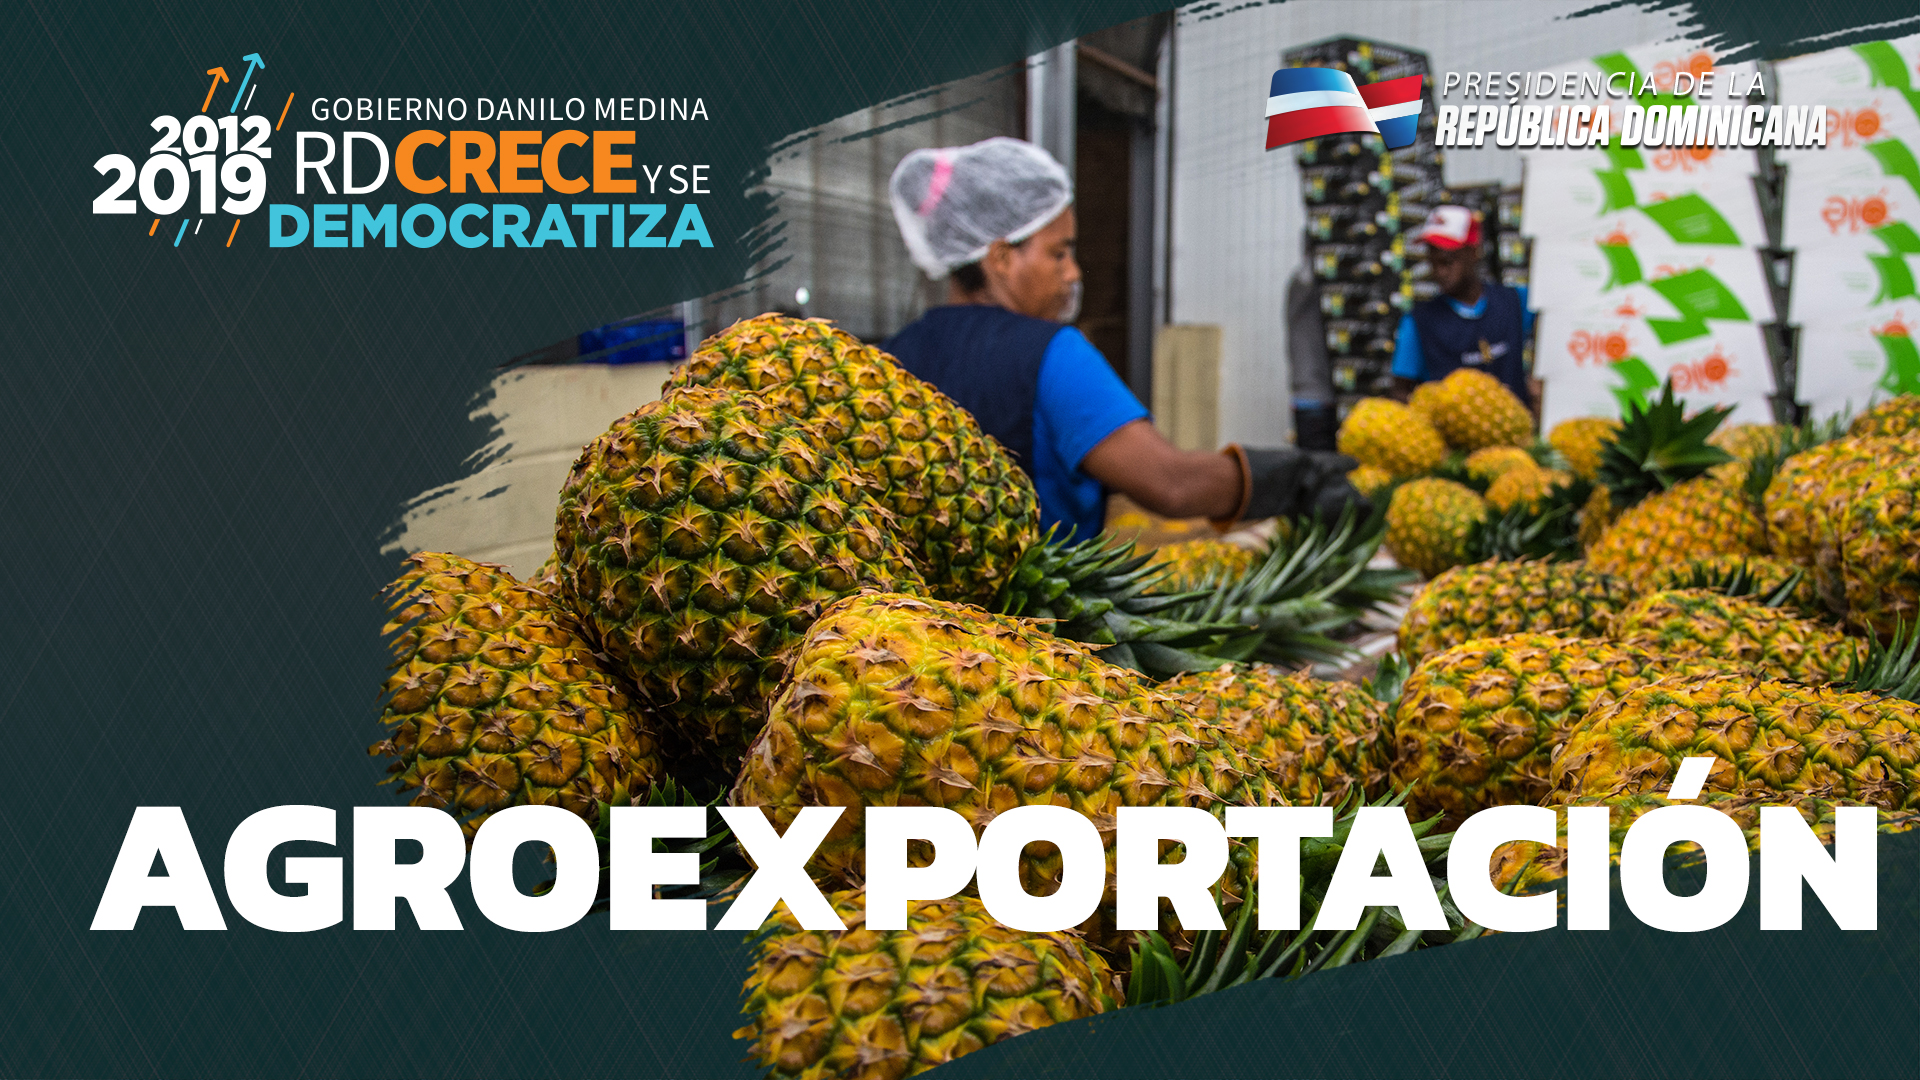 REPÚBLICA DOMINICANA: Exportaciones campo dominicano crecen sin precedentes en últimos 7 años, mejorando calidad de vida de agricultores y sus familias